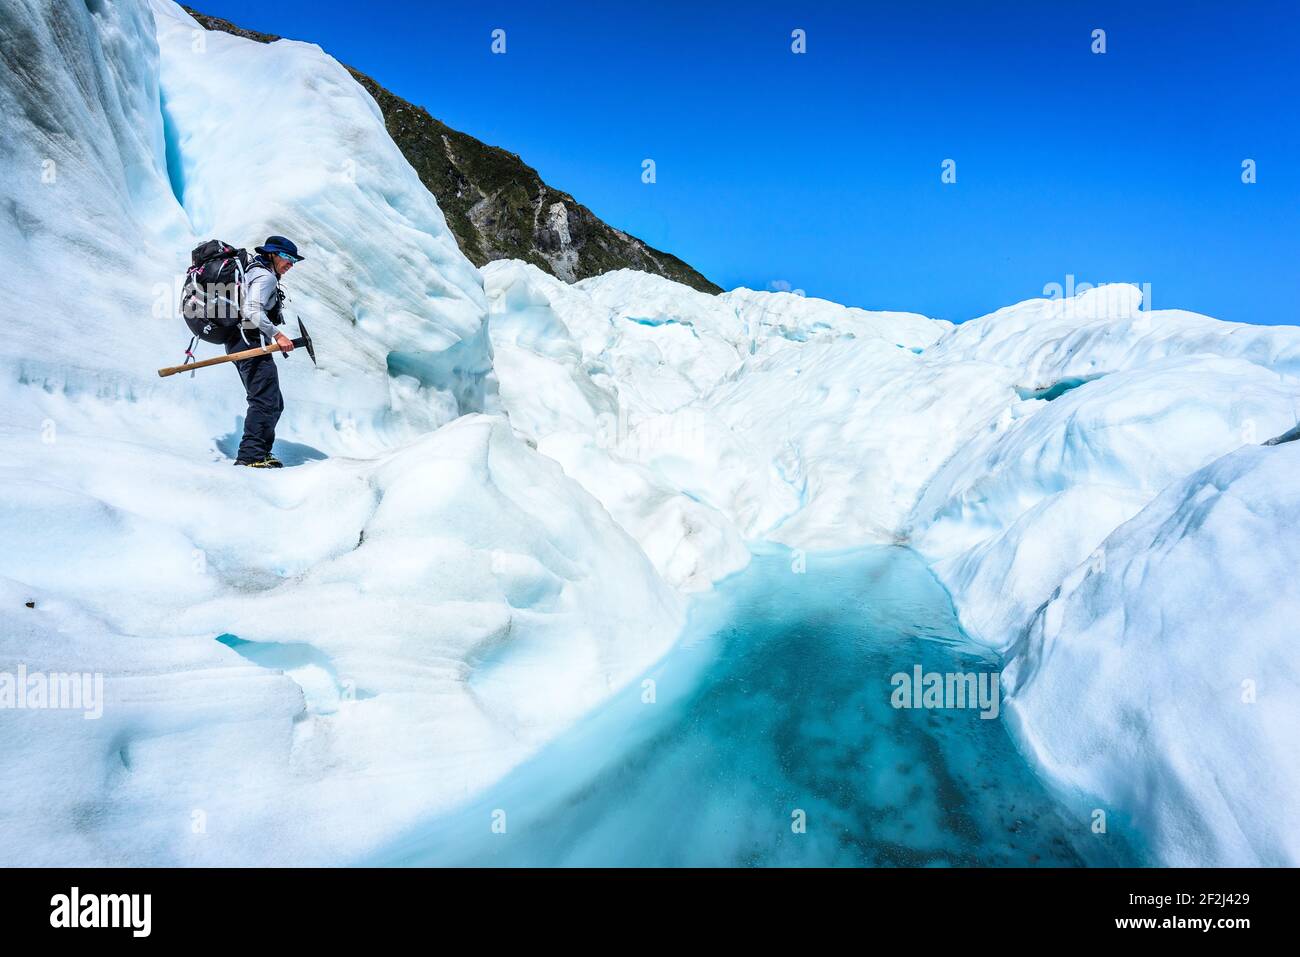 Eiskletterer, der sich auf Schnee und Eis auf dem Fox Glacier, South Island, Neuseeland, vorwärts bewegt. Sonniger Tag mit klarem Himmel. Stockfoto